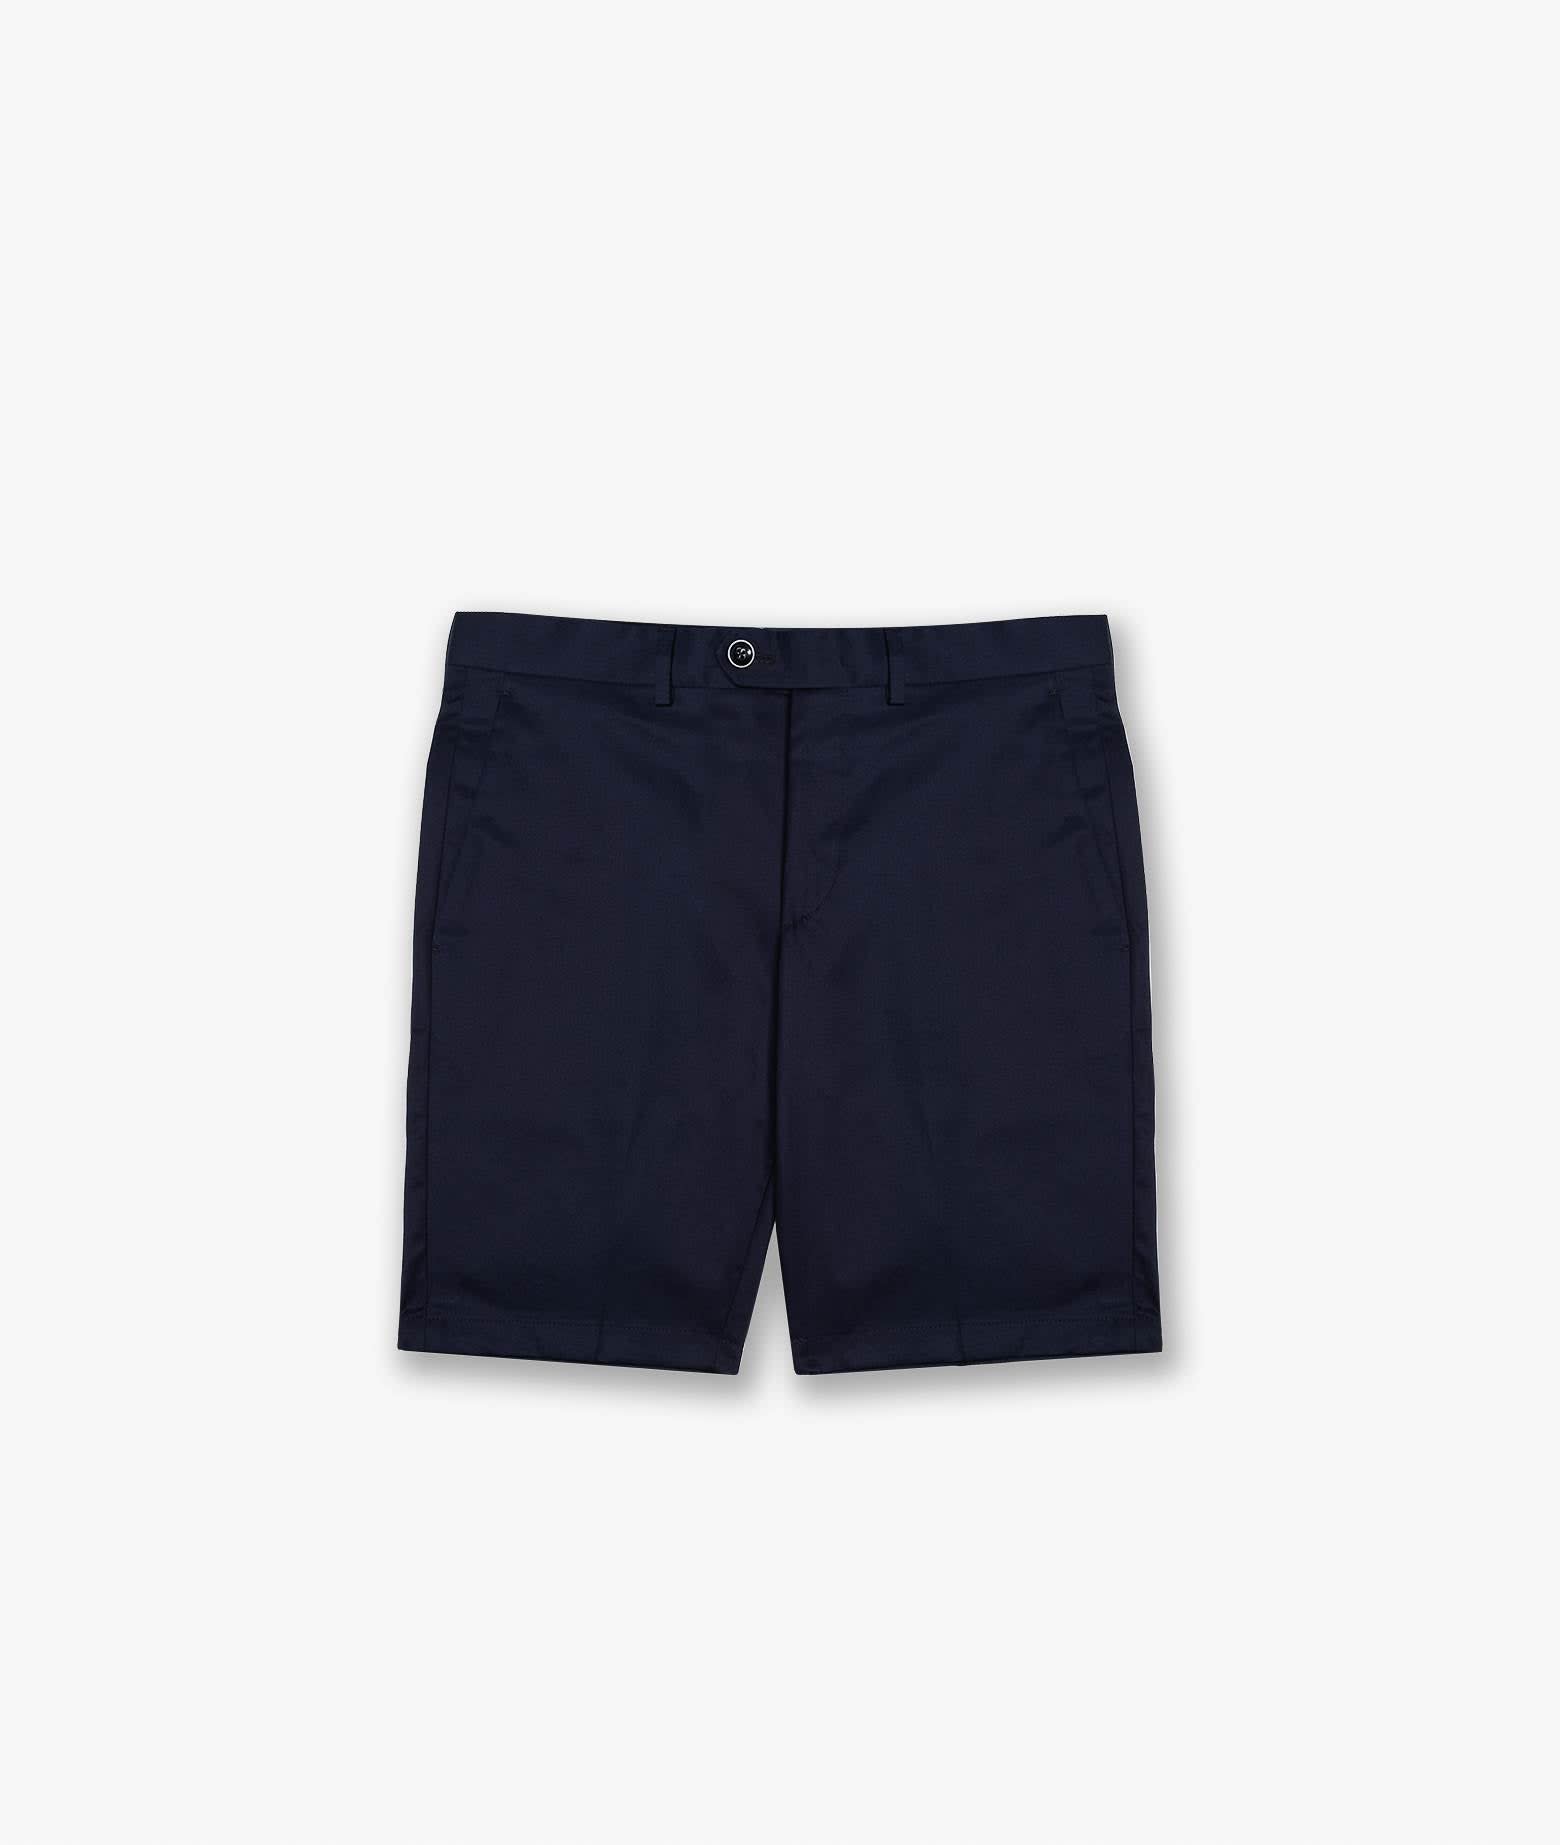 Shop Larusmiani Bermuda Short Poltu Quatu Shorts In Blue